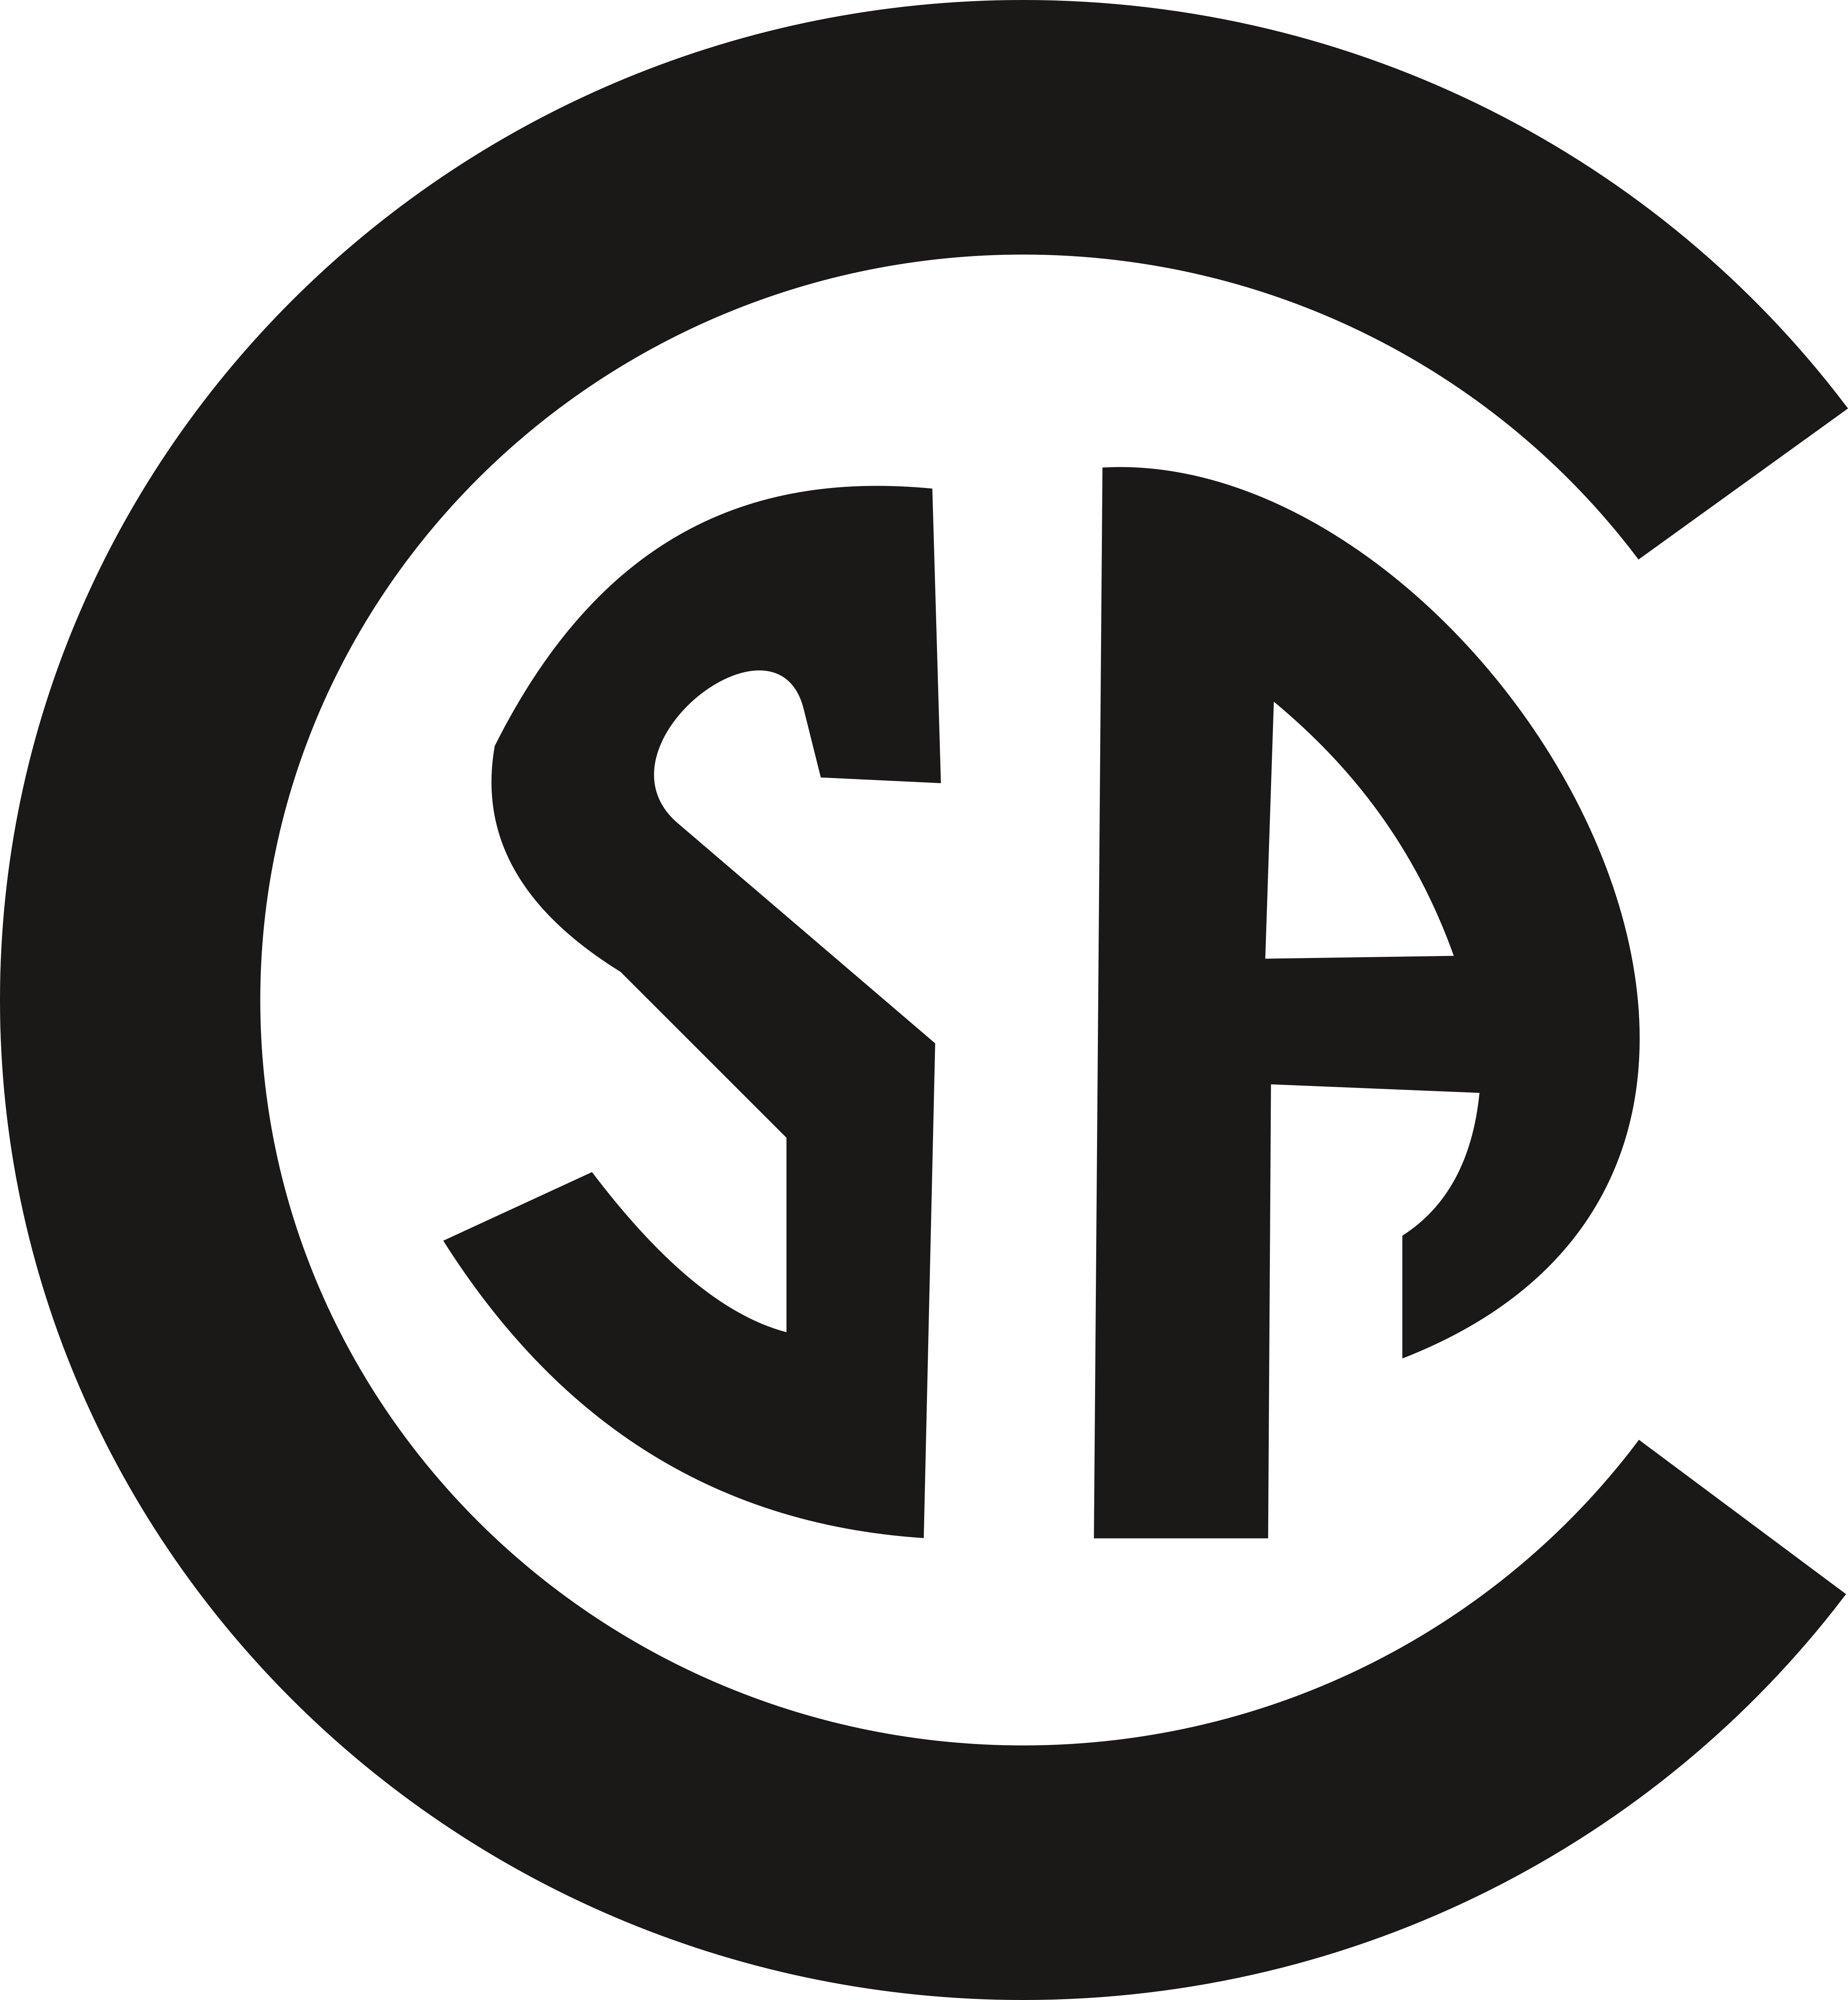 SA – Logos Download